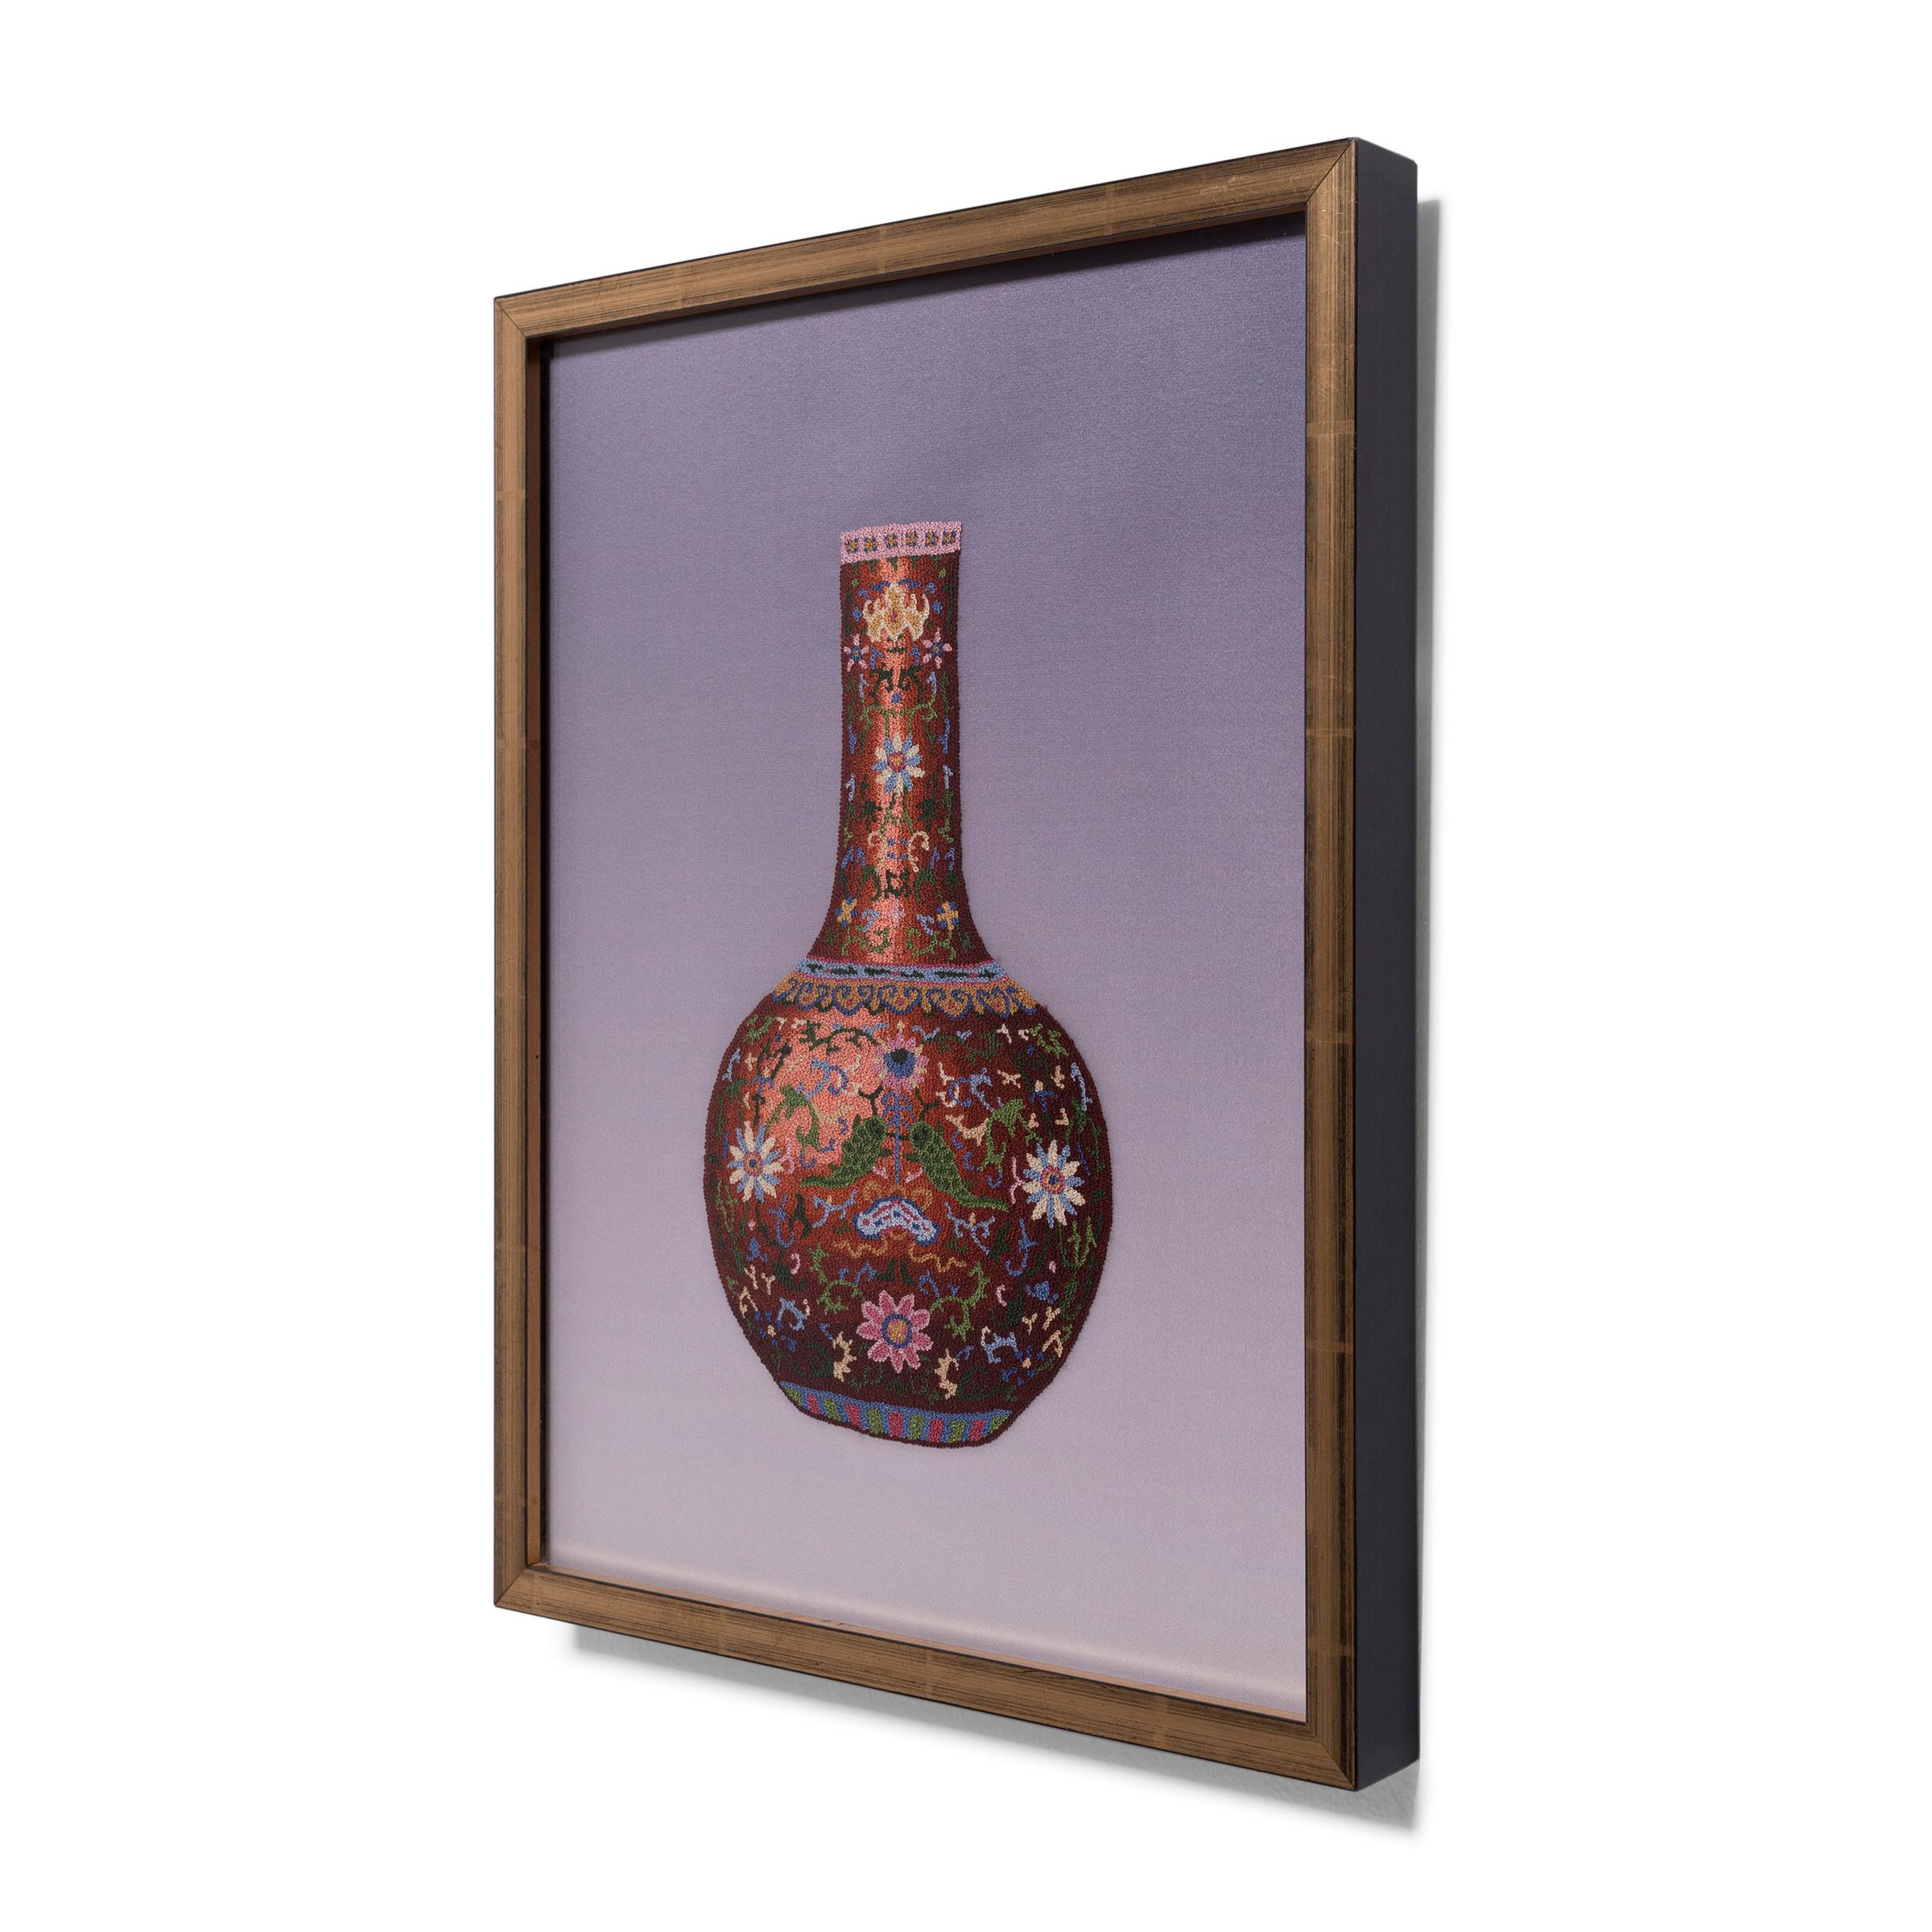 Magnifique exemple de broderie chinoise, ce textile de soie encadré utilise le fameux point interdit pour représenter un vase en porcelaine de la famille rose. Également connu sous le nom de 